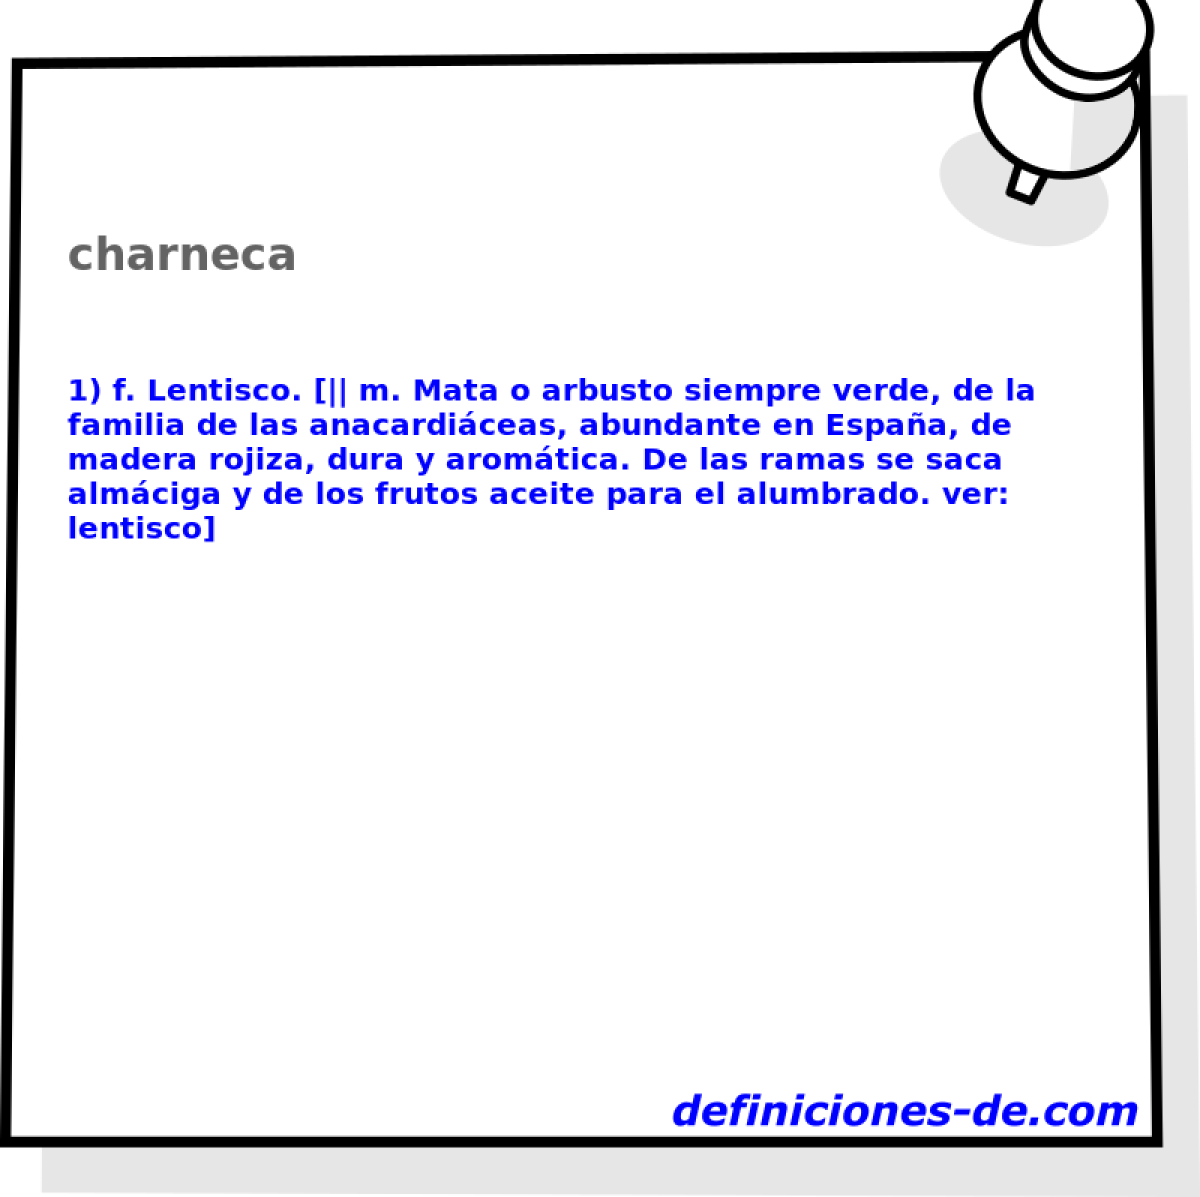 charneca 